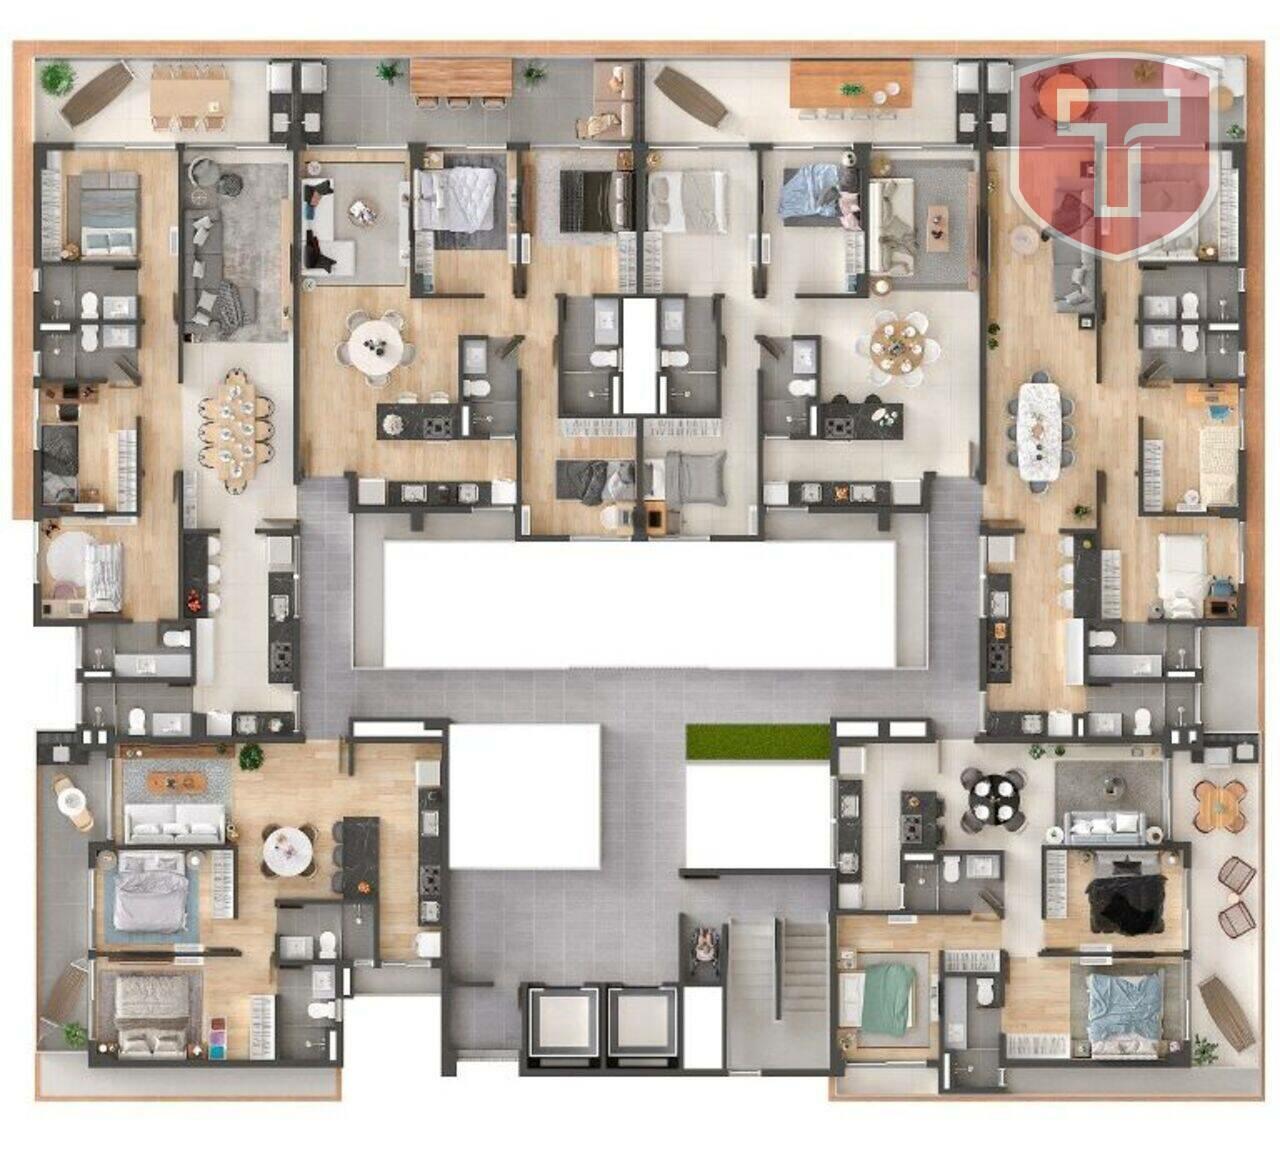 Costero - Apartamento com 3 quartos à venda - Intermares, Cabedelo/PB